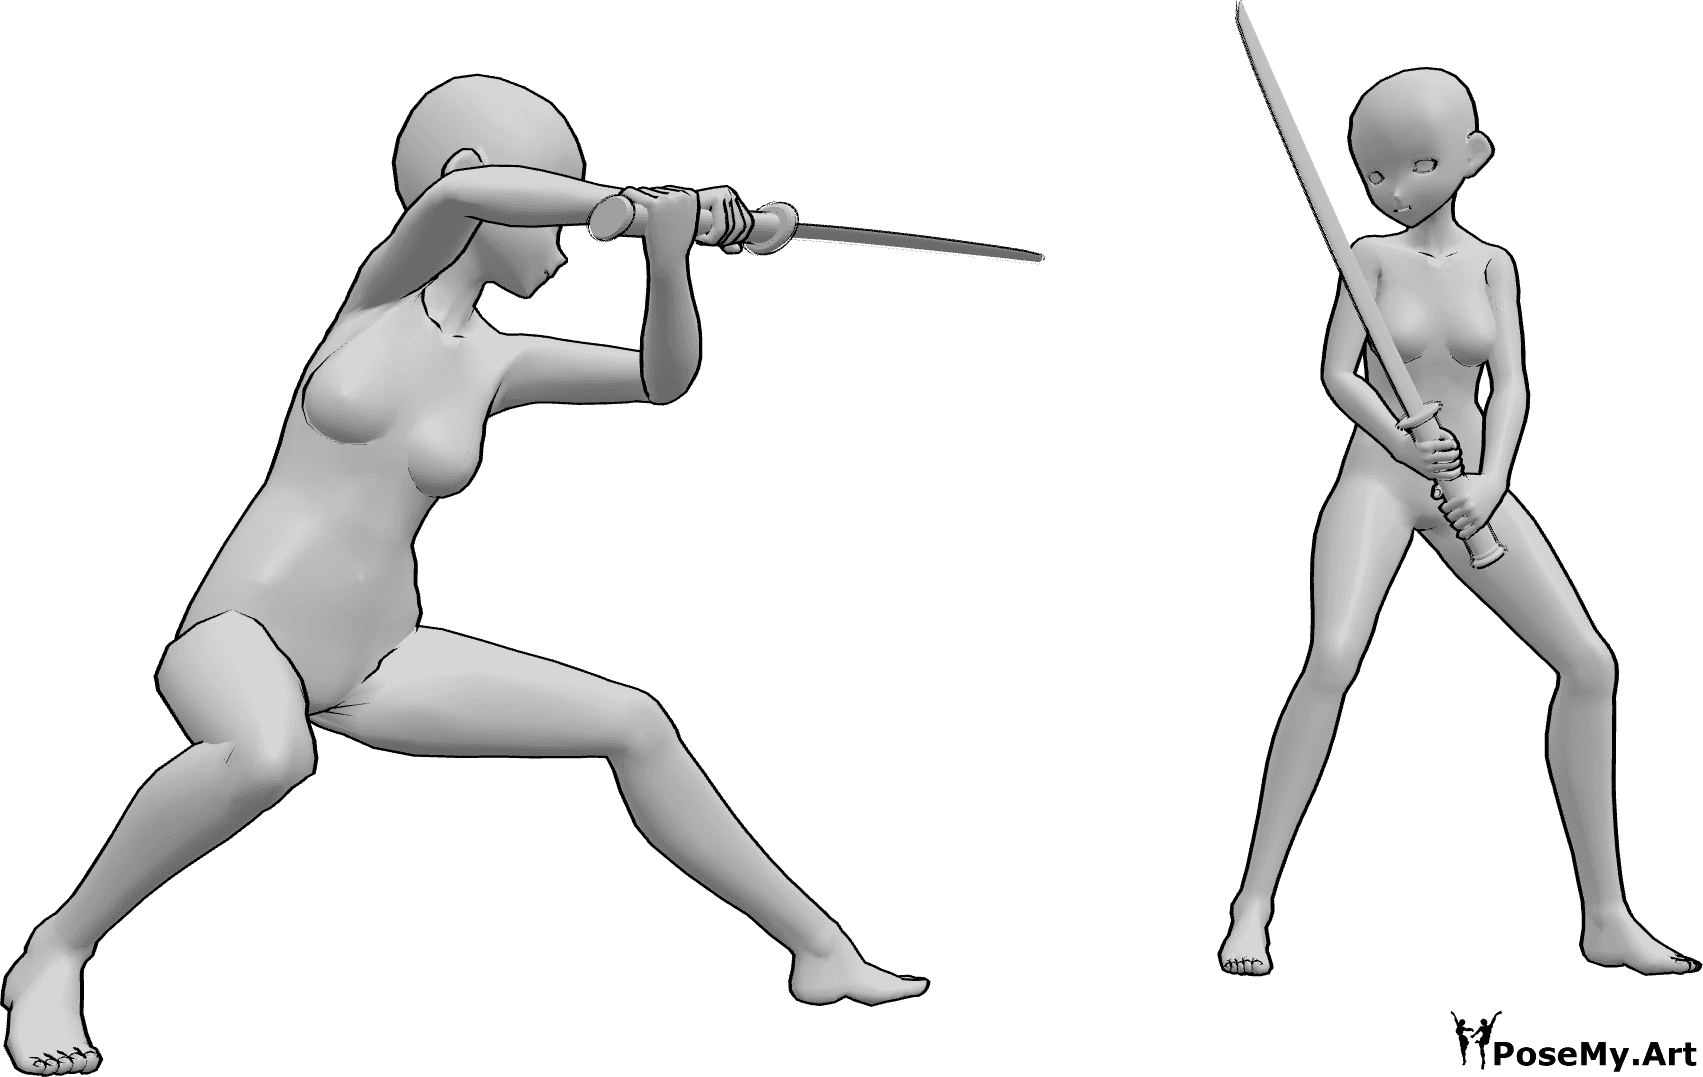 Posen-Referenz- Anime Katana Kampf Pose - Anime-Frauen kämpfen mit Katanas, sie sind dabei, sich gegenseitig anzugreifen